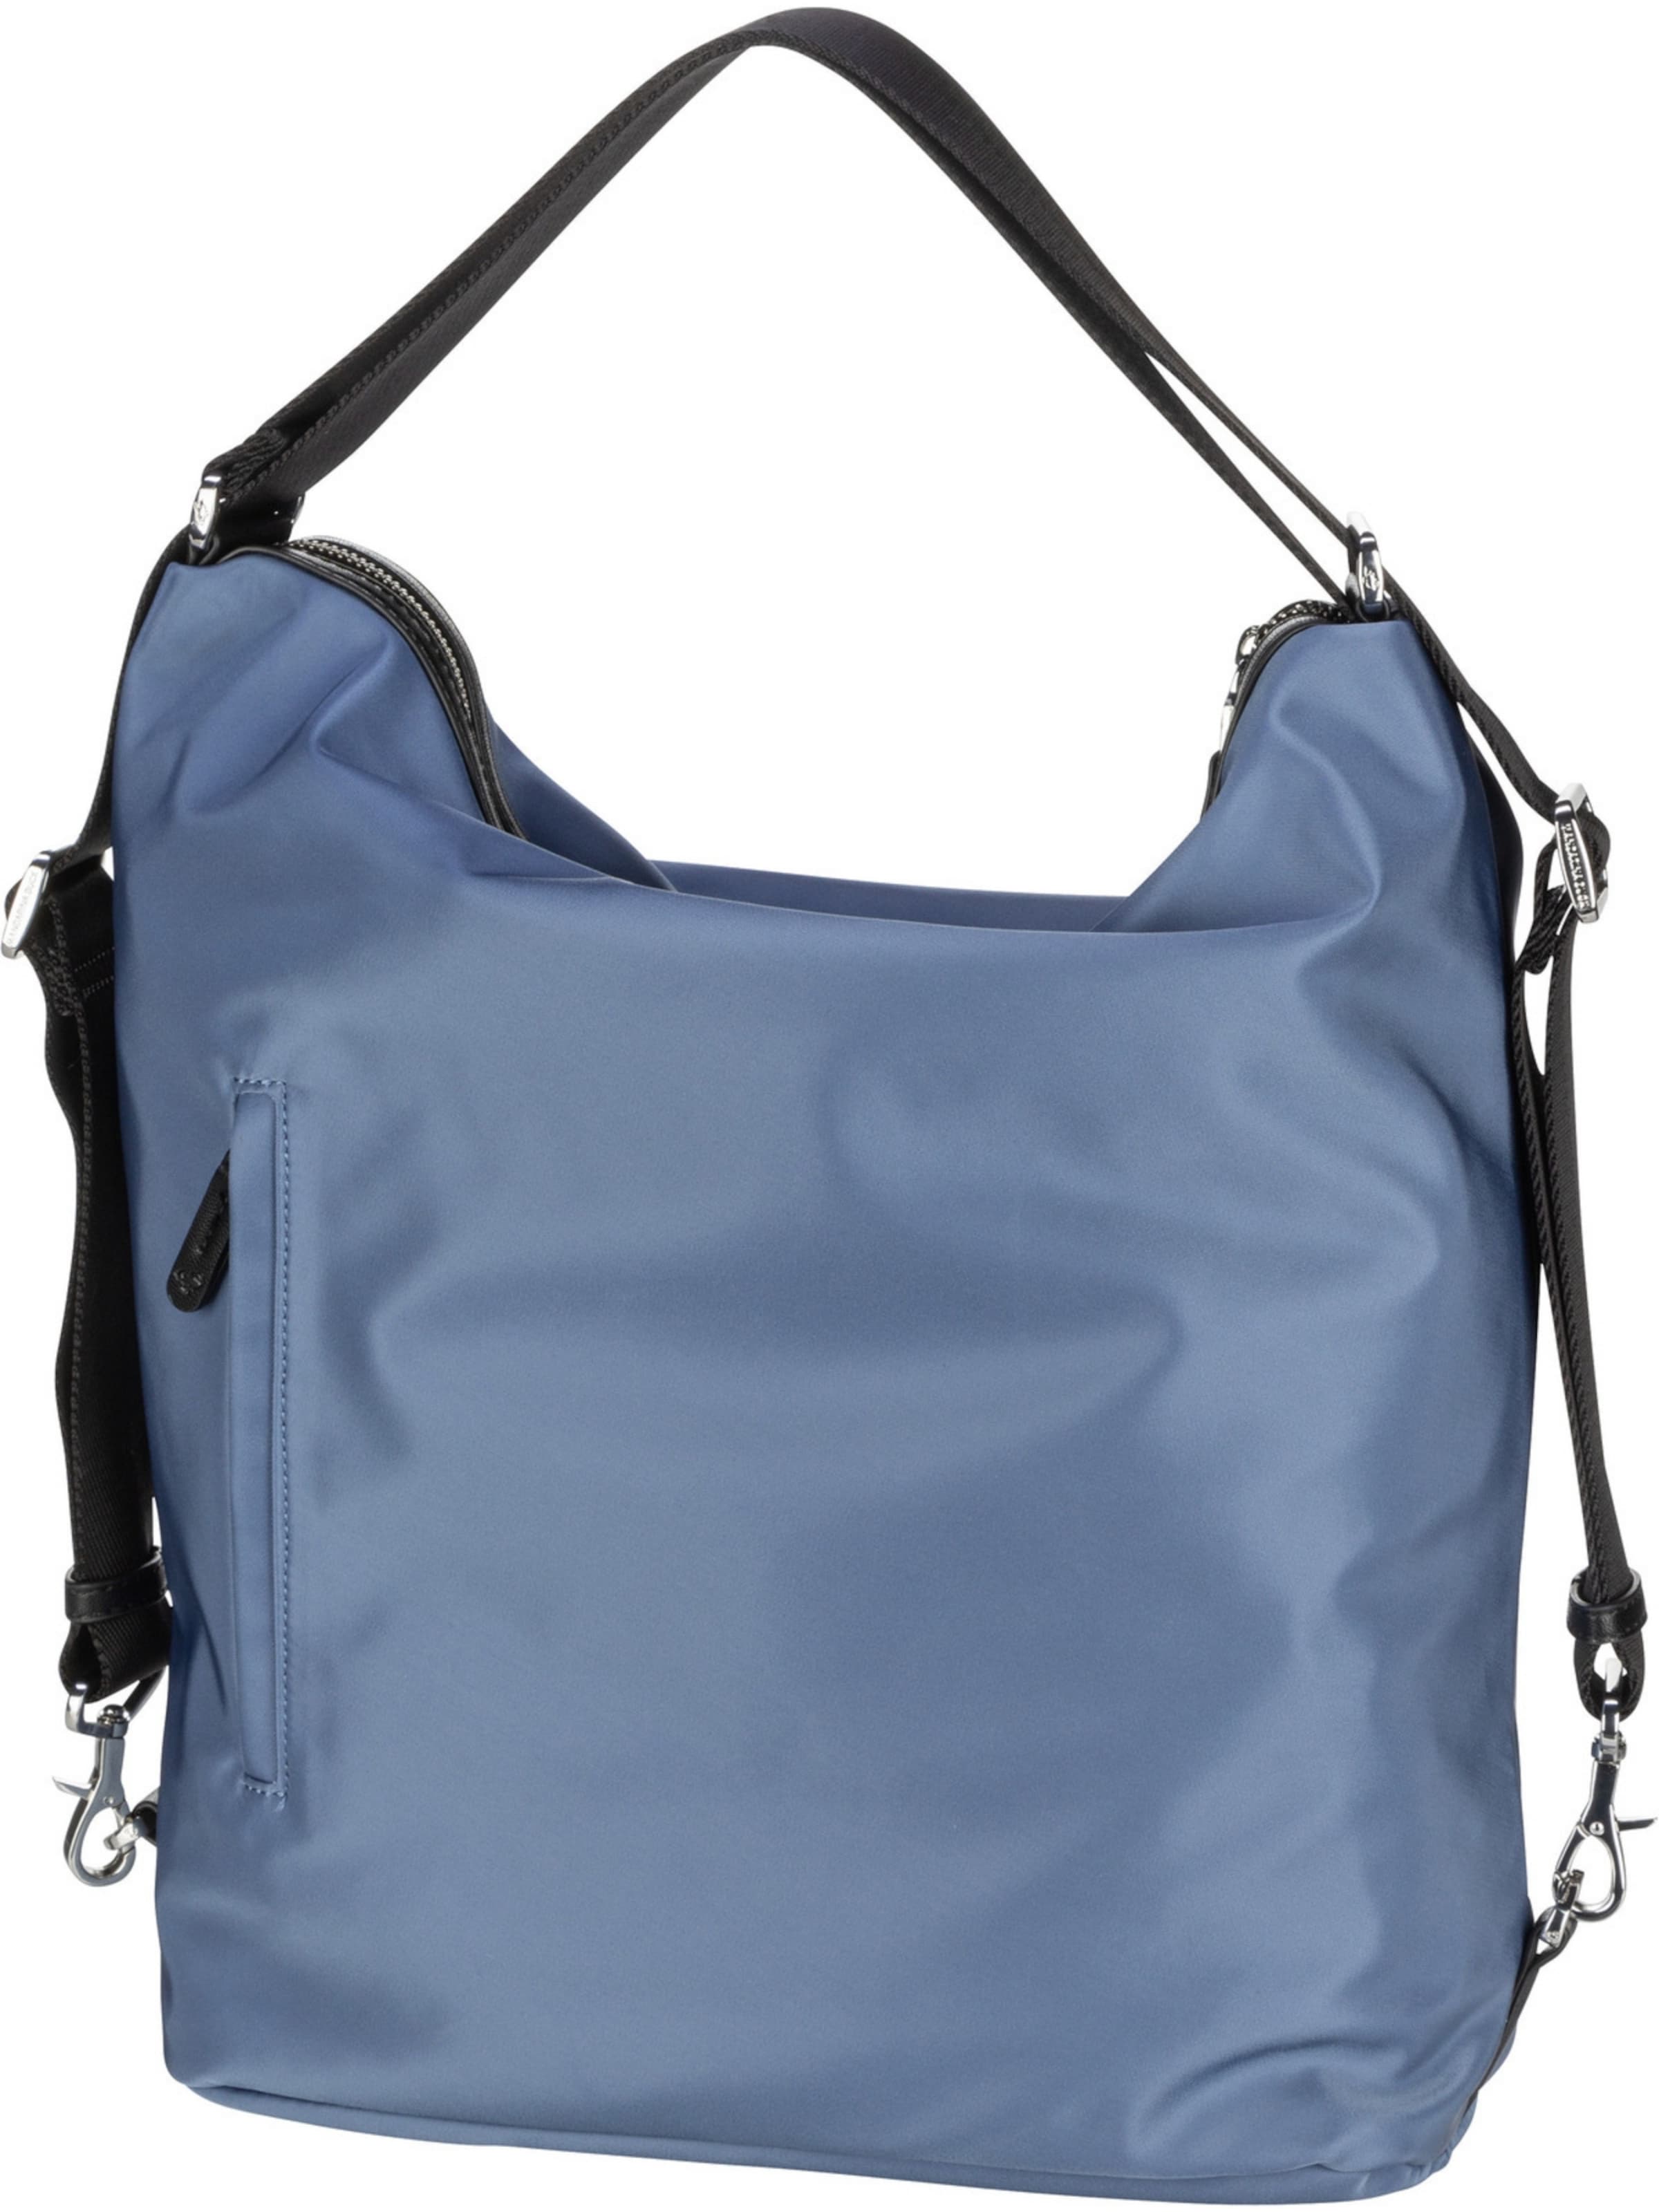 Frauen Taschen & Rucksäcke MANDARINA DUCK Tasche in Blau - LX00626